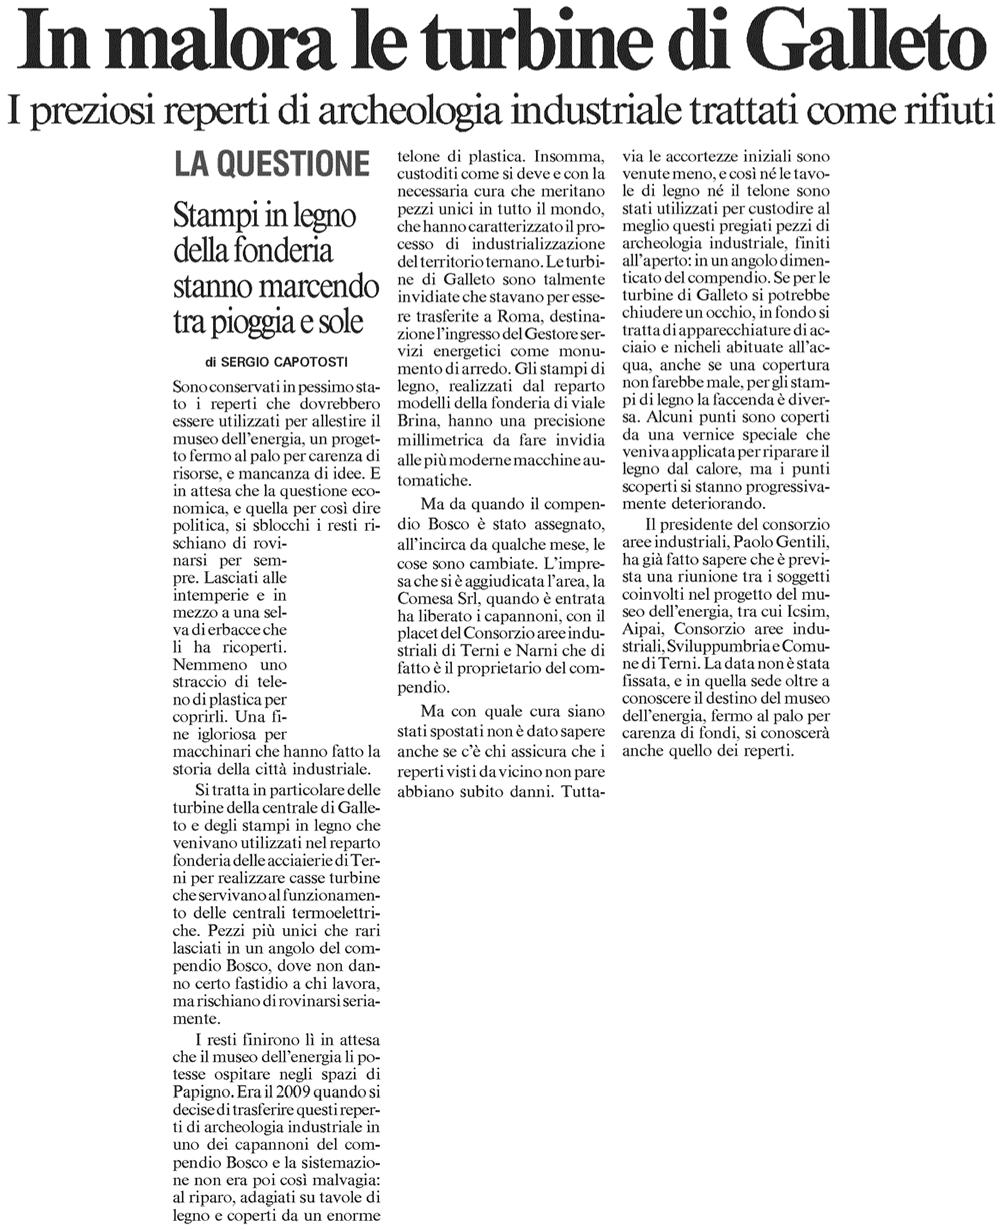 Il Messaggero 12-07-2012 p42a